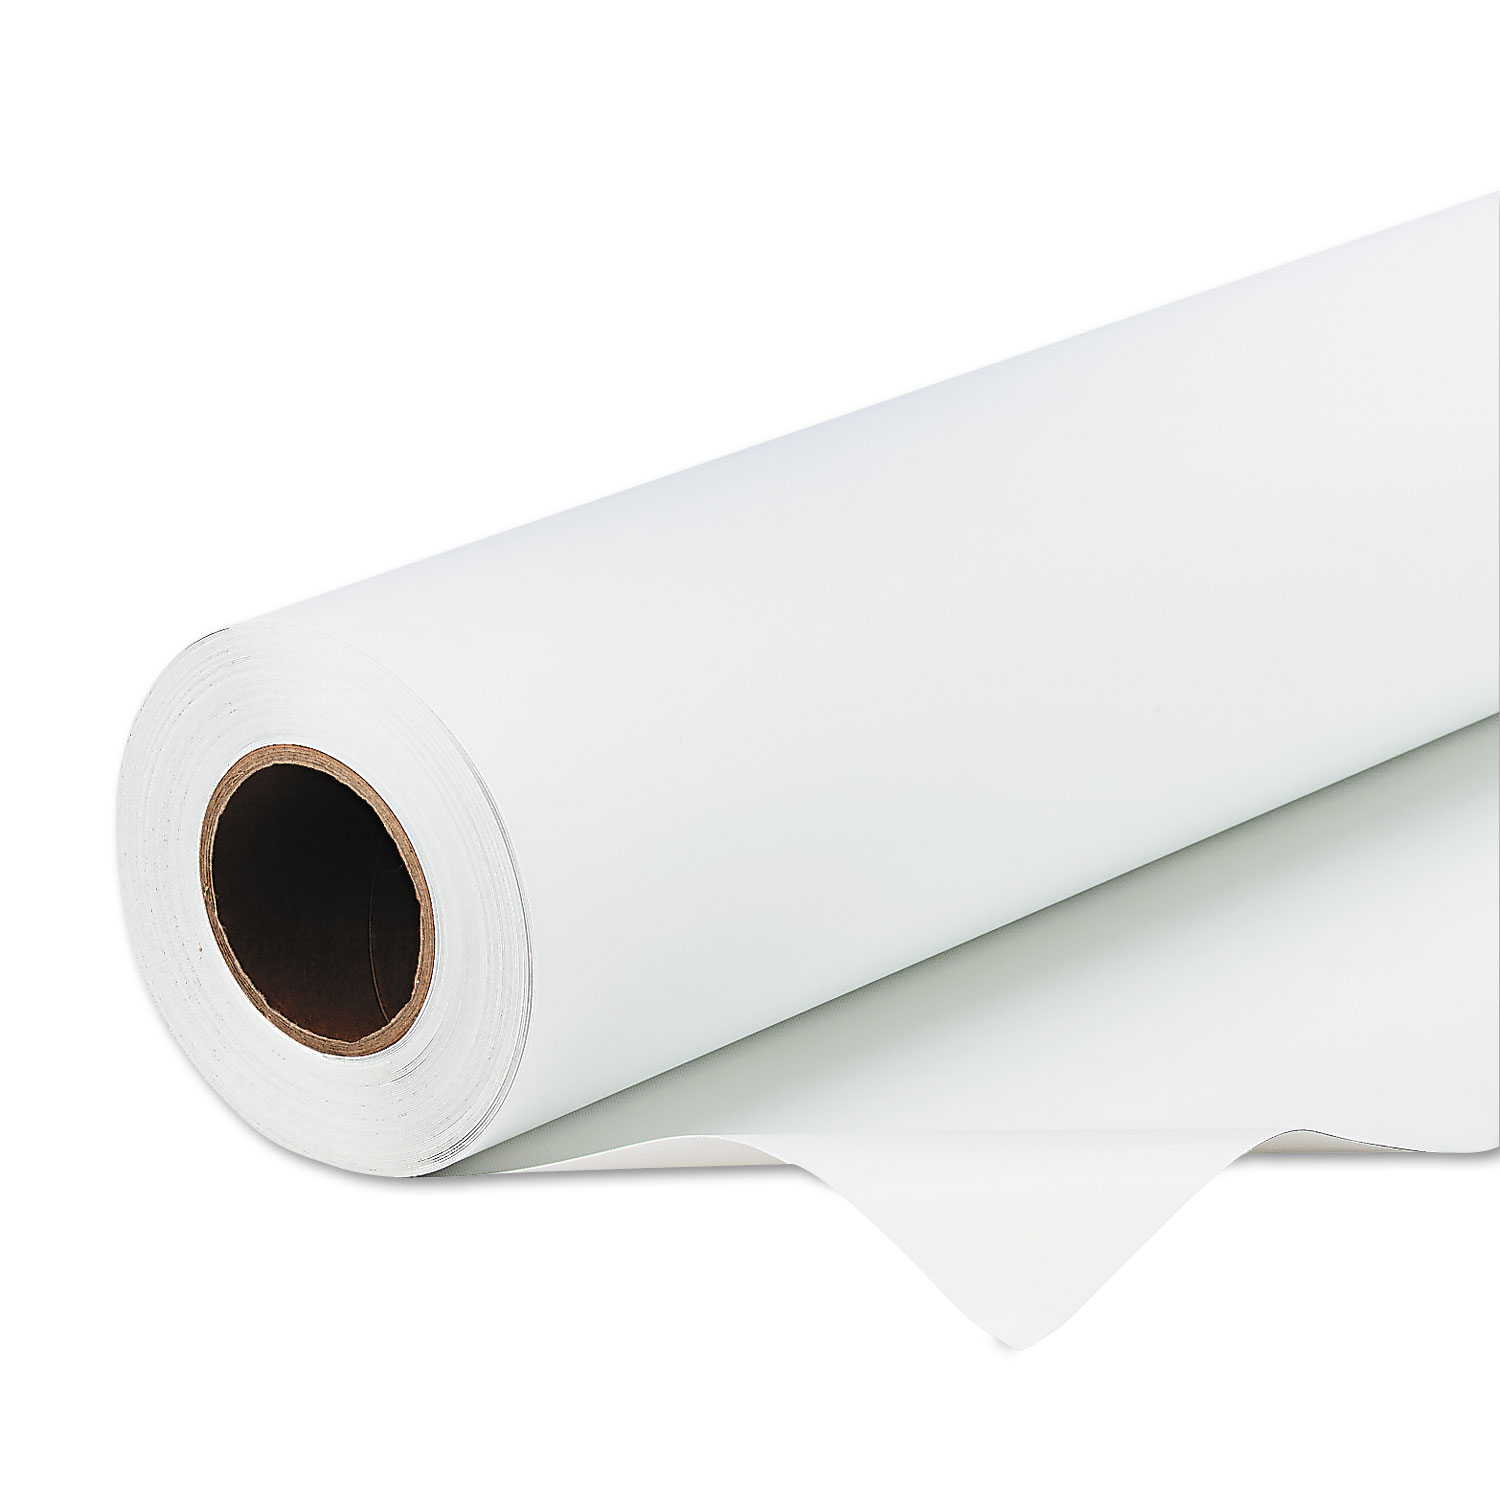 Somerset Velvet Paper Roll, 255 g, 44 x 50 ft, White